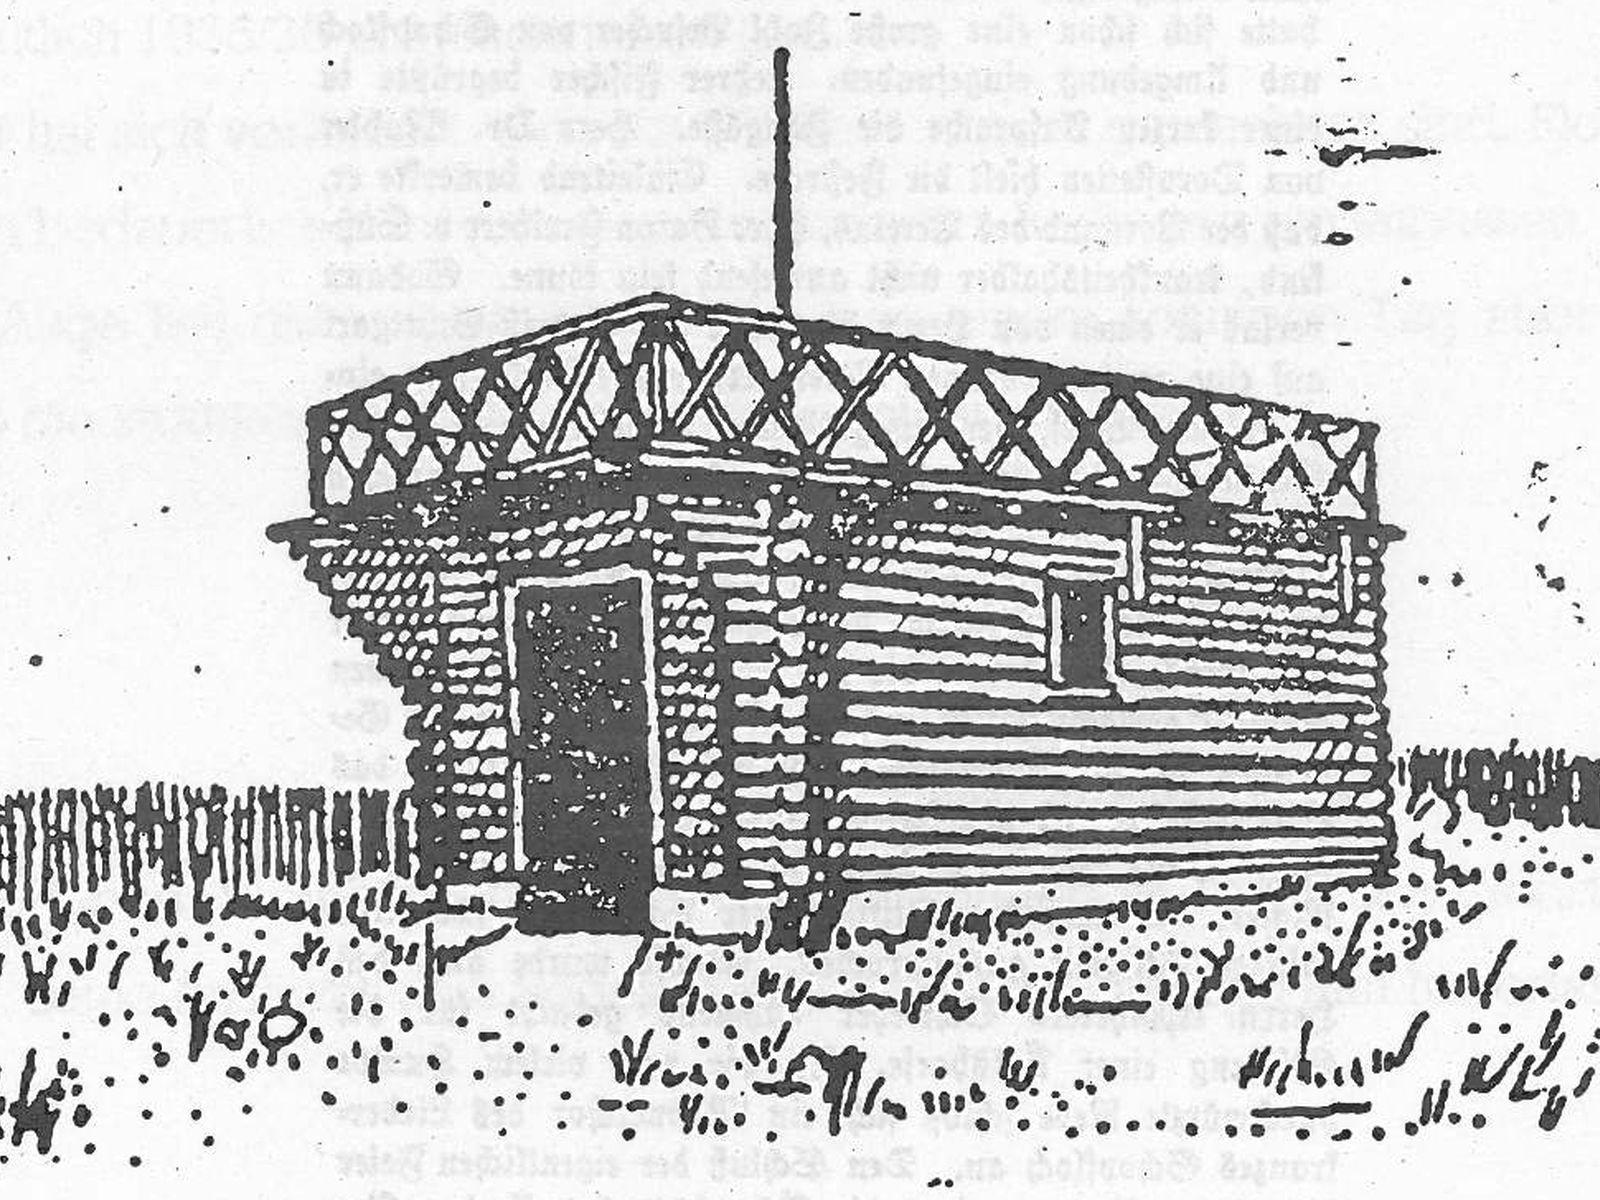  Schopflocher Skizzen Hütte - Bild wird mit einem Klick vergrößert 